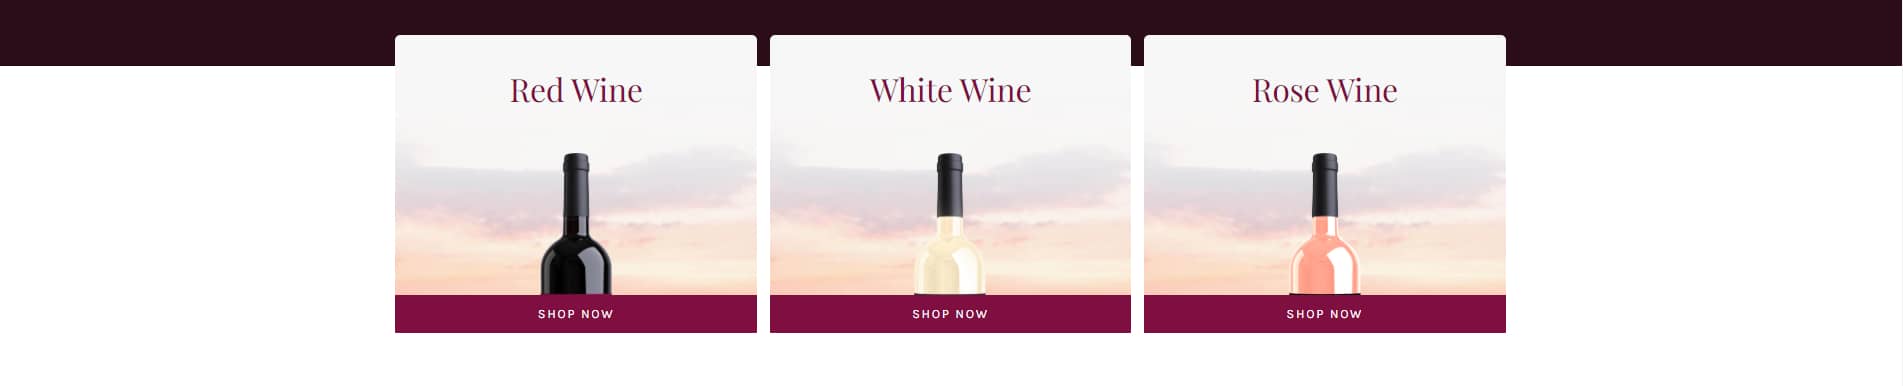 Avada Winery Wine Category